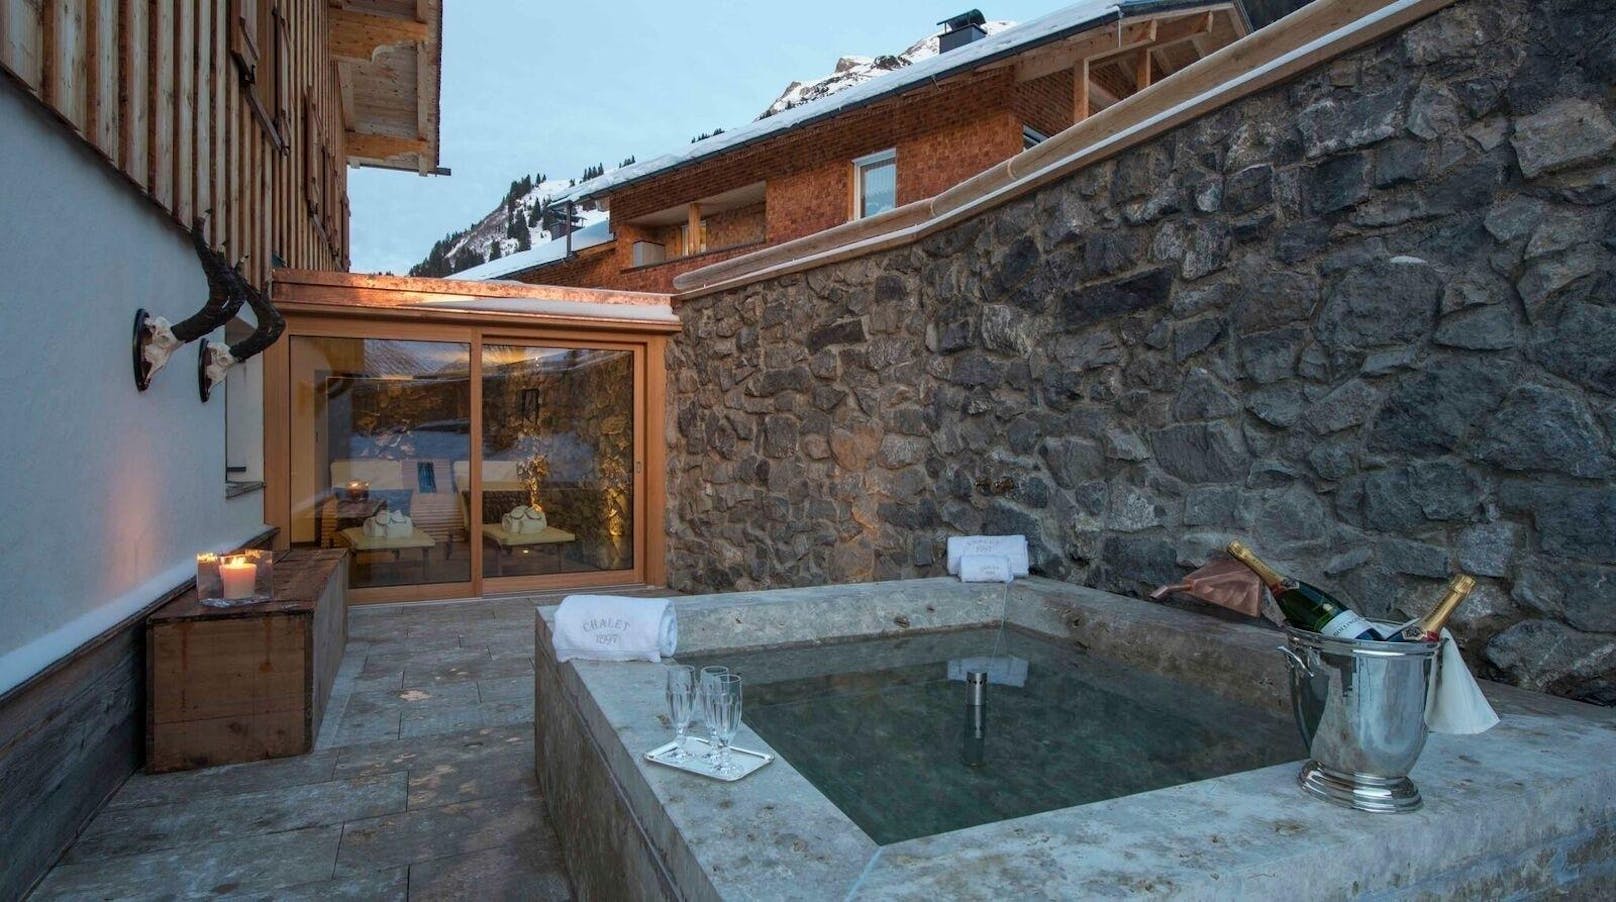 <b>Wohnlfühloase auf drei Etagen in Lech, Österreich</b>

Diese besondere Glanzstück alpiner Baukunst vereint rustikalen Charme mit luxuriösen Elementen. Sie verfügt über fünf Schlafzimmer, einen geräumigen Speisesaal, einen Wohnraum, eine hauseigene Bar und das exklusive Highlight einer Bio-Sauna. Der Platz reicht für zwölf Personen und die Einbettung in ein verträumtes Bergambiente bietet eine unvergessliche Atmosphäre. Der Preis pro Nacht beträgt 7.052 Euro.